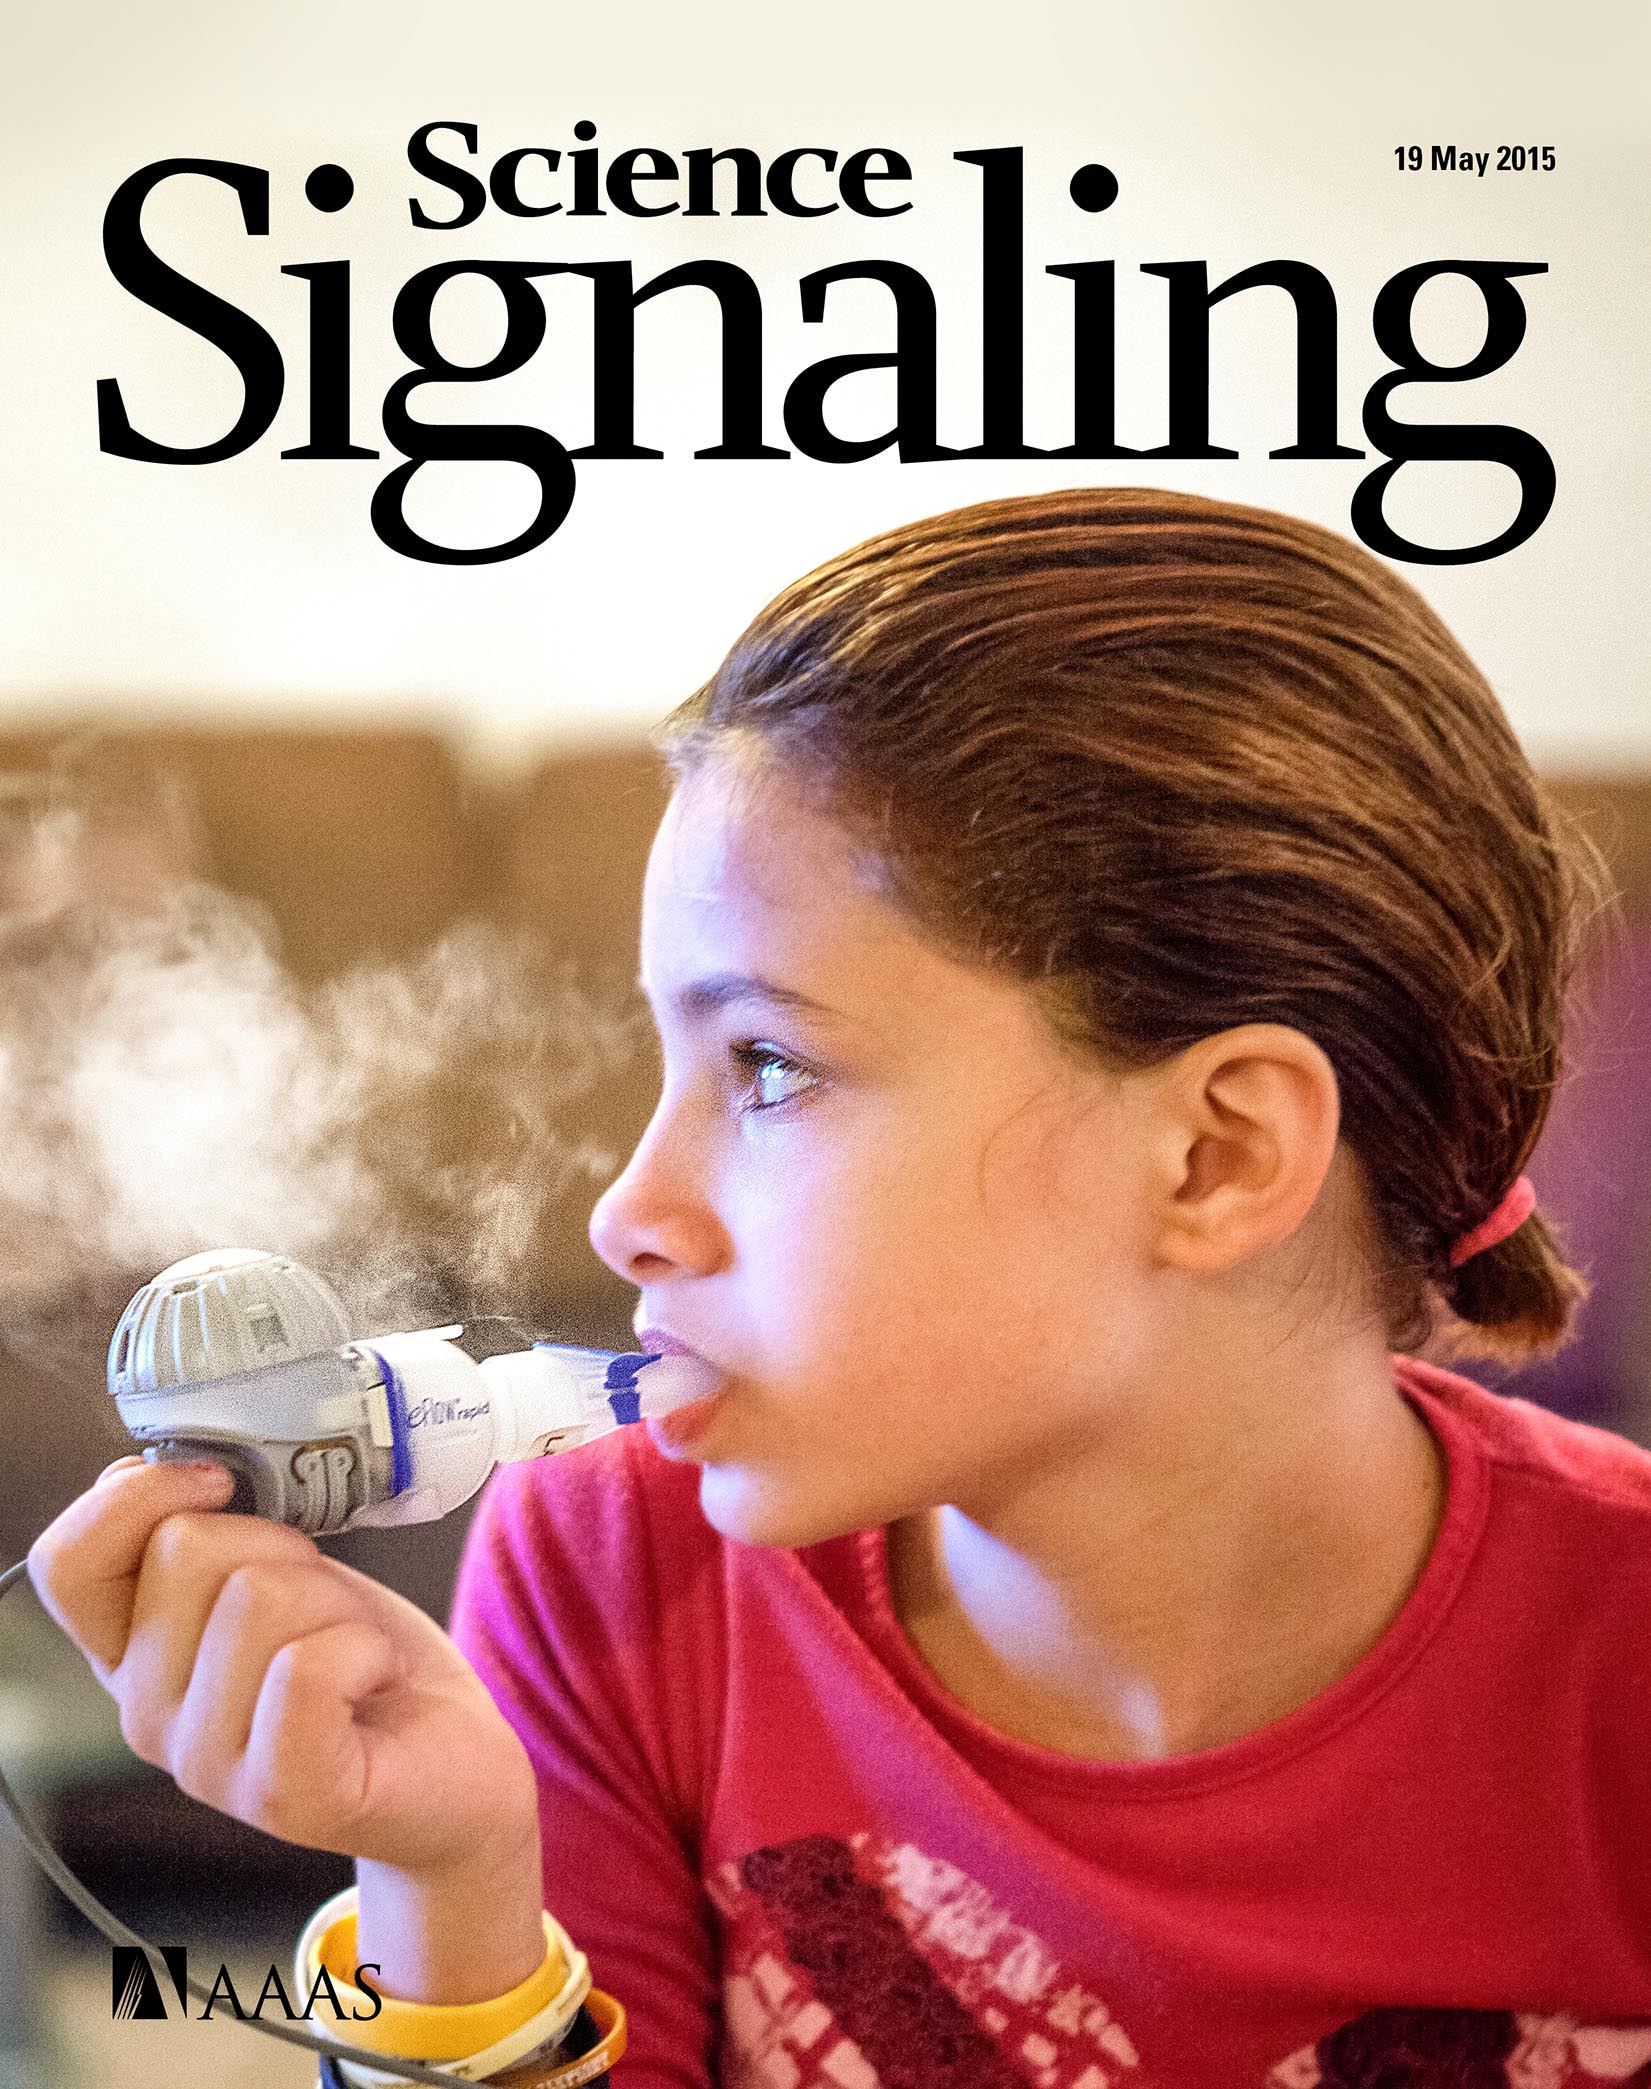 O estudo foi capada da revista Science Signaling.